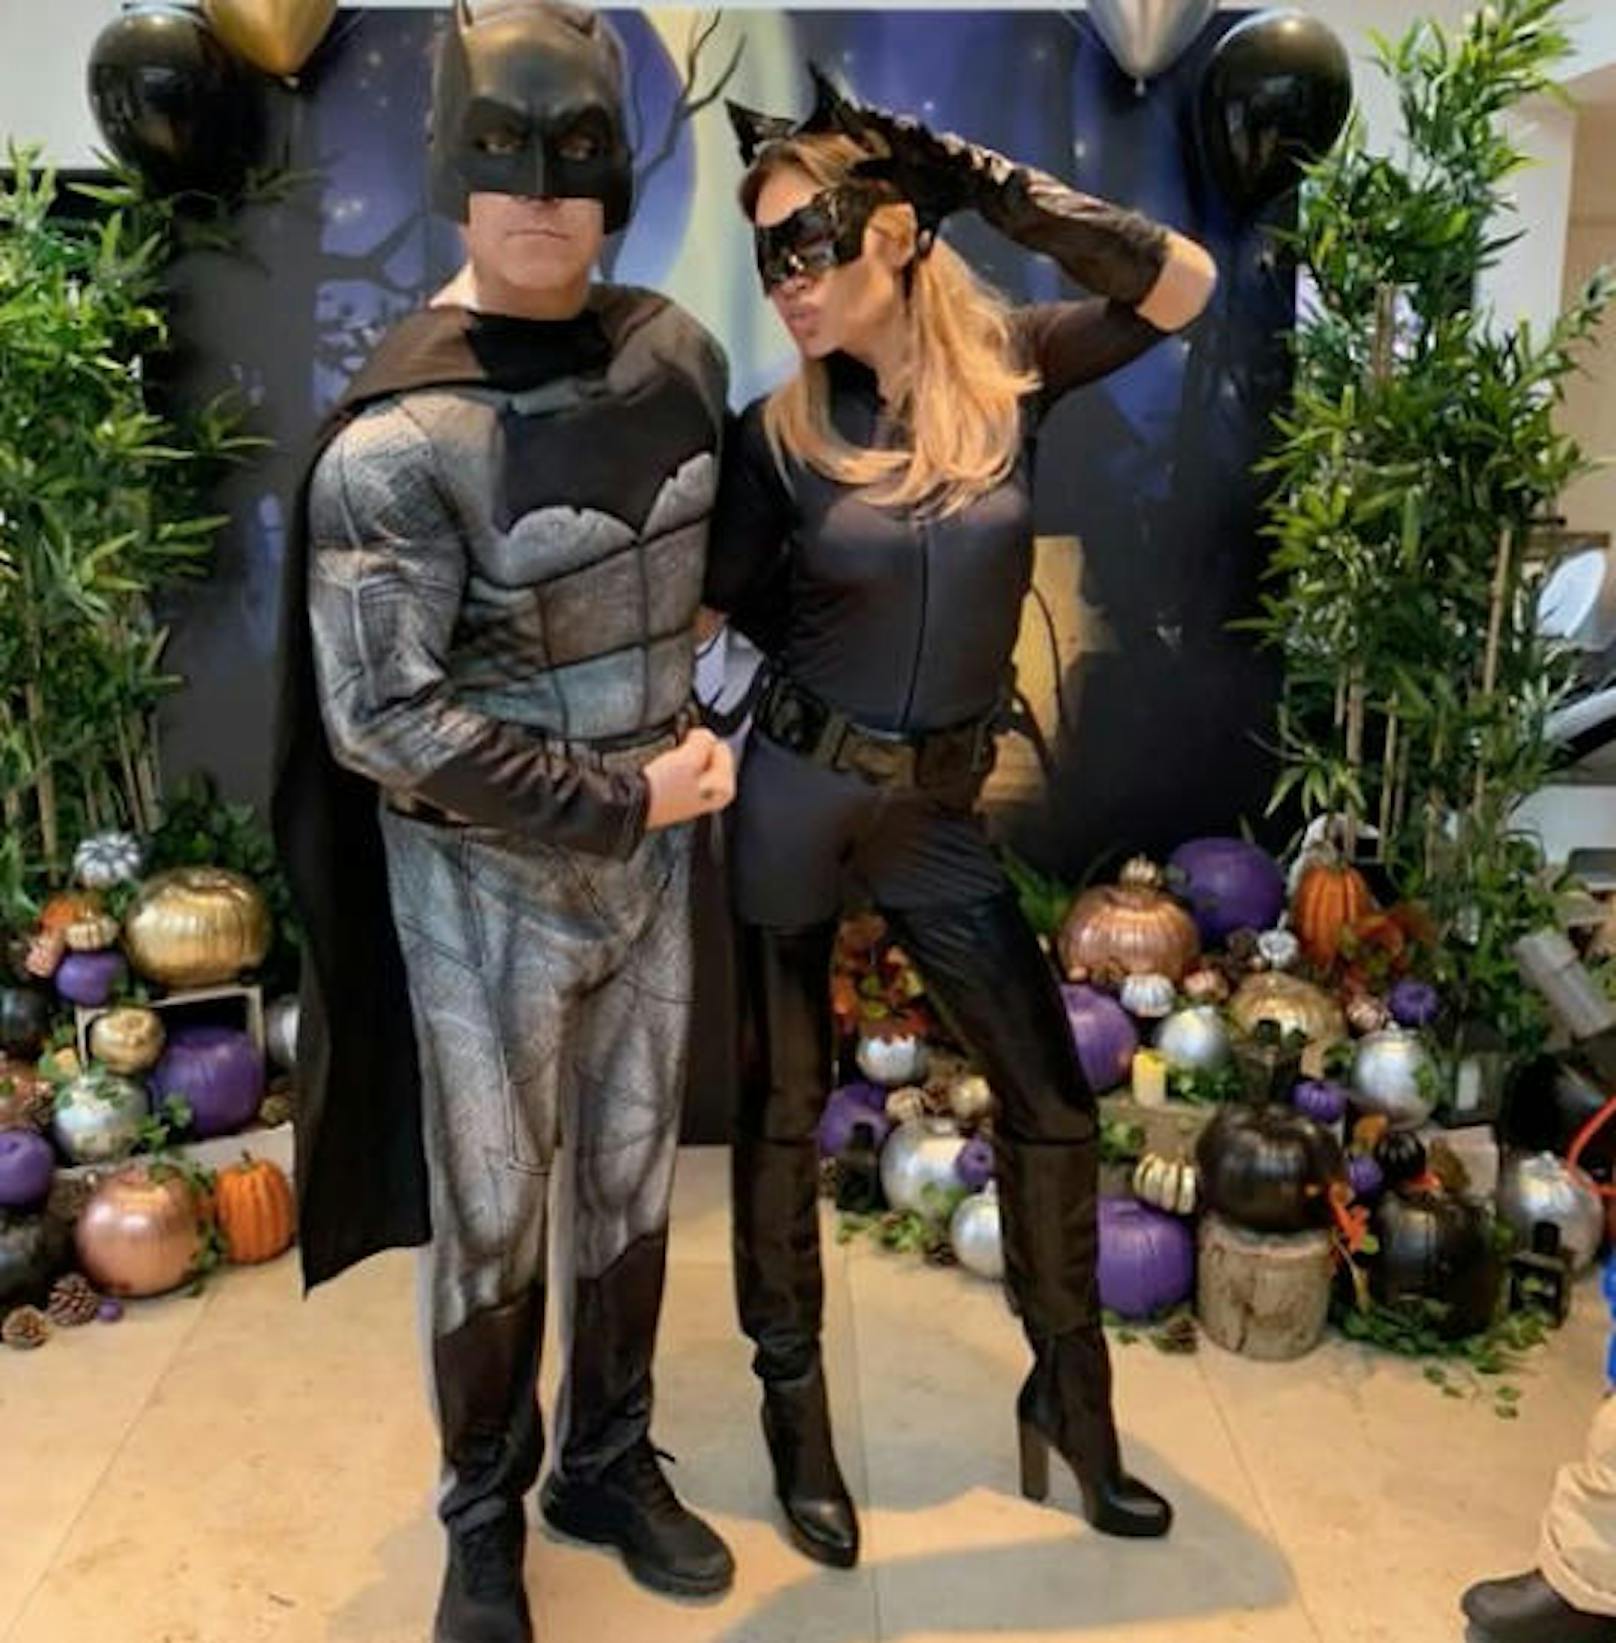 24.11.2018: "Hinter jedem Batman ist eine Catwoman", schreibt Robbie Williams. Seine Ayda scheint sich in ihrer Rolle als kratzbürstige Bösewichtin wohl zu fühlen